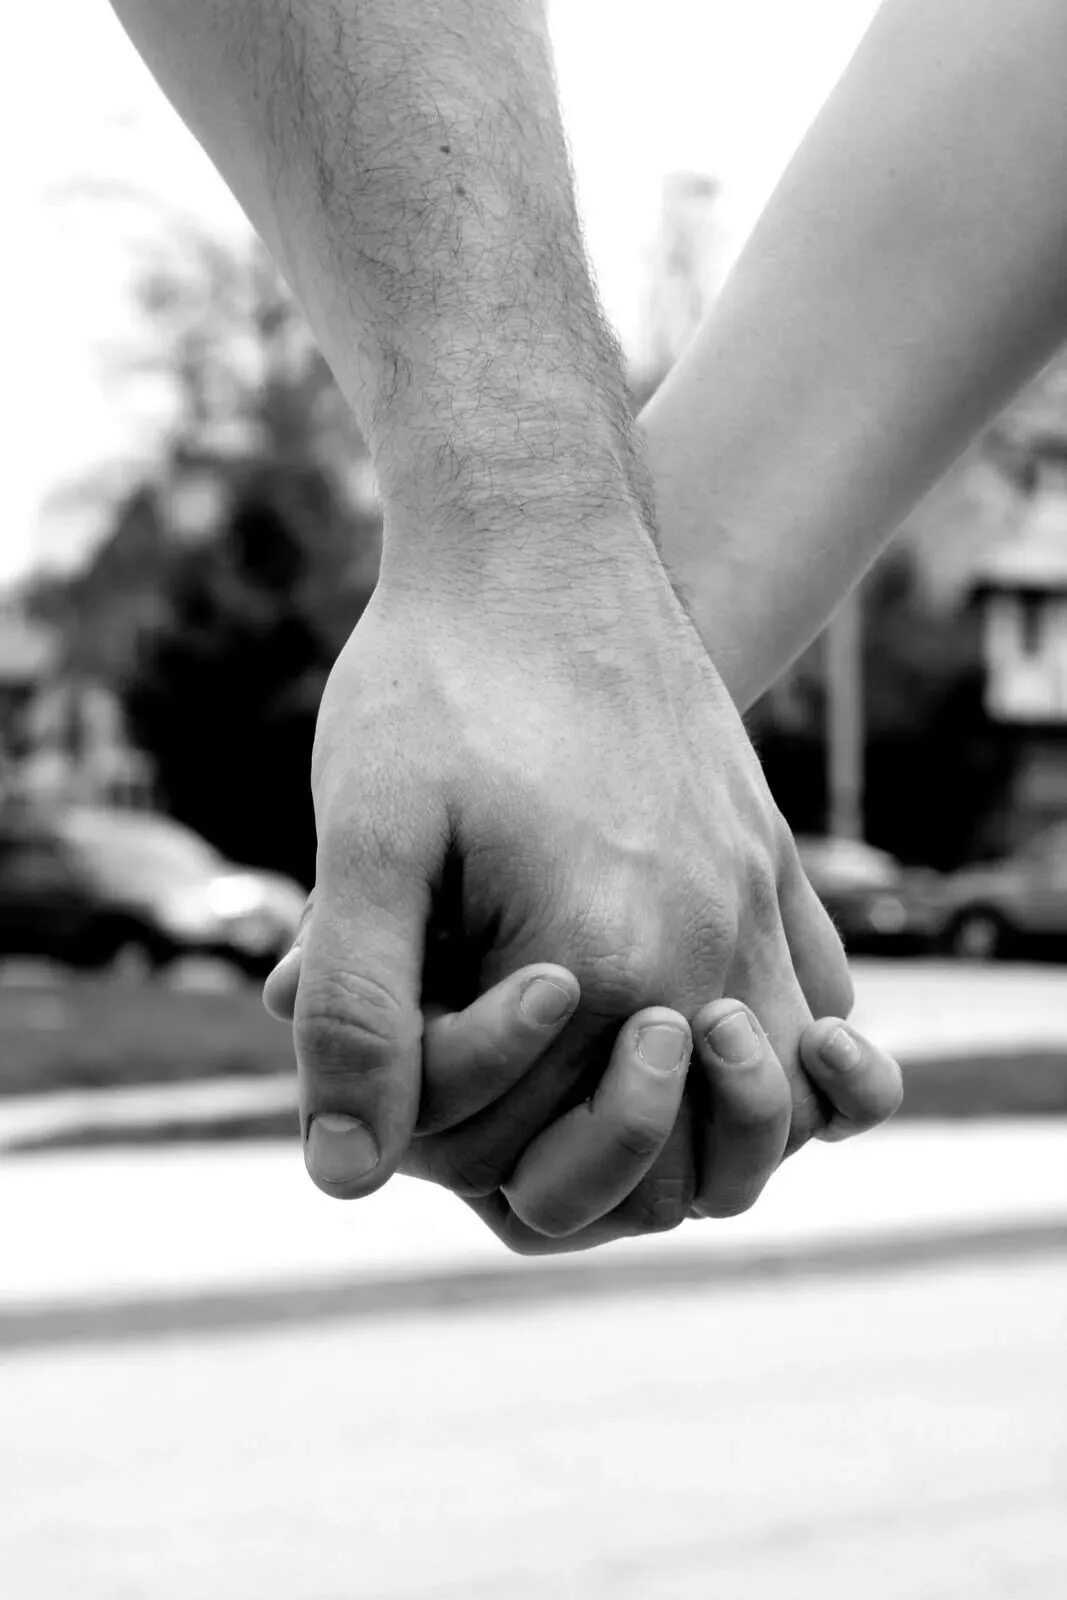 Я держу тебя за руку. Держатся за руки. Руки влюбленных. Сплетение рук. Держит за руку.